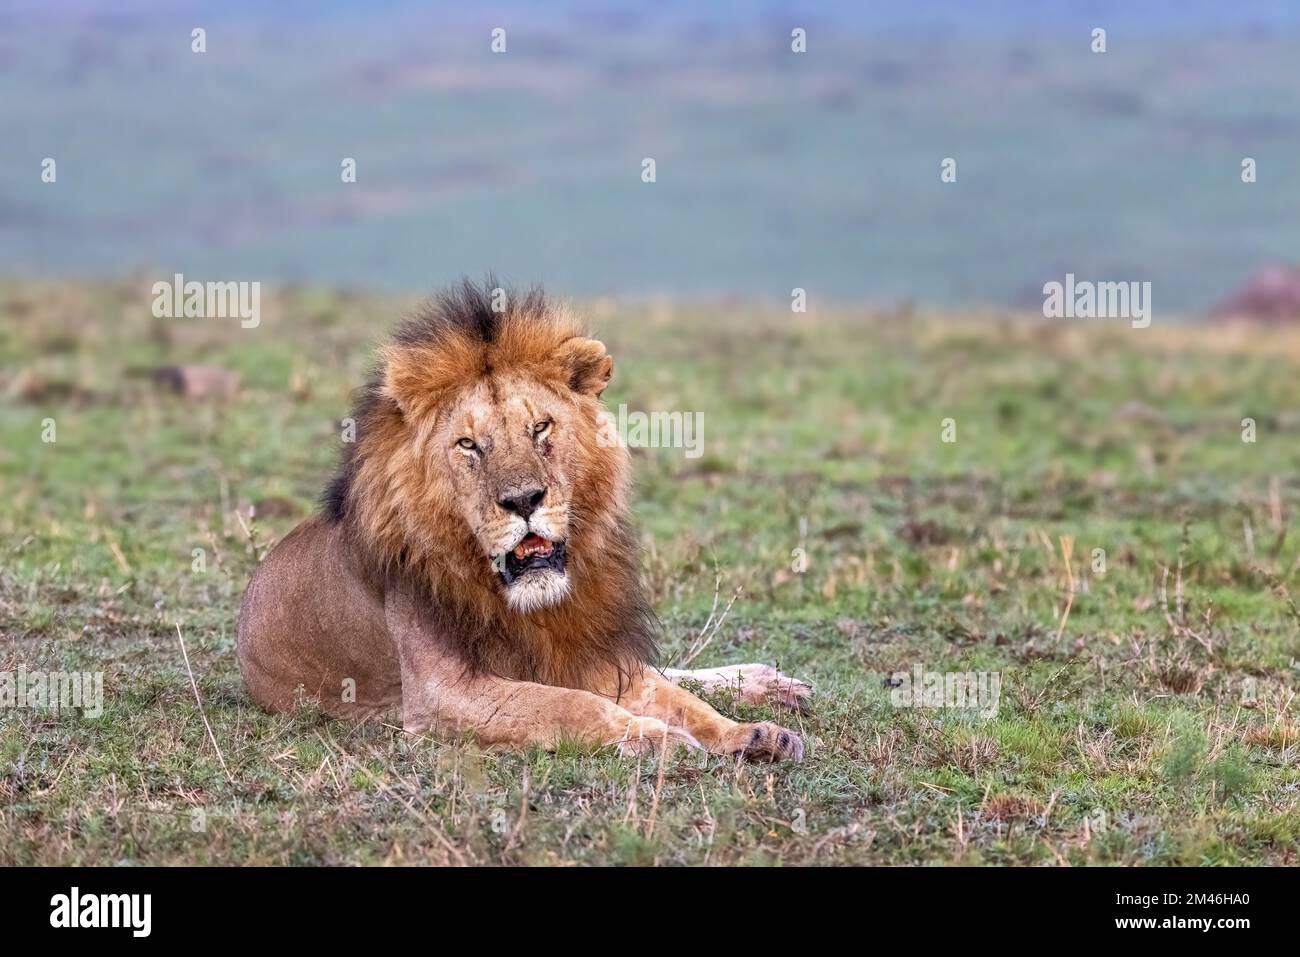 Der Erwachsene Löwe, panthera leo, schaut in die Kamera. Die große Katze ruht sich in der Masai Mara aus, Kenia. Stockfoto